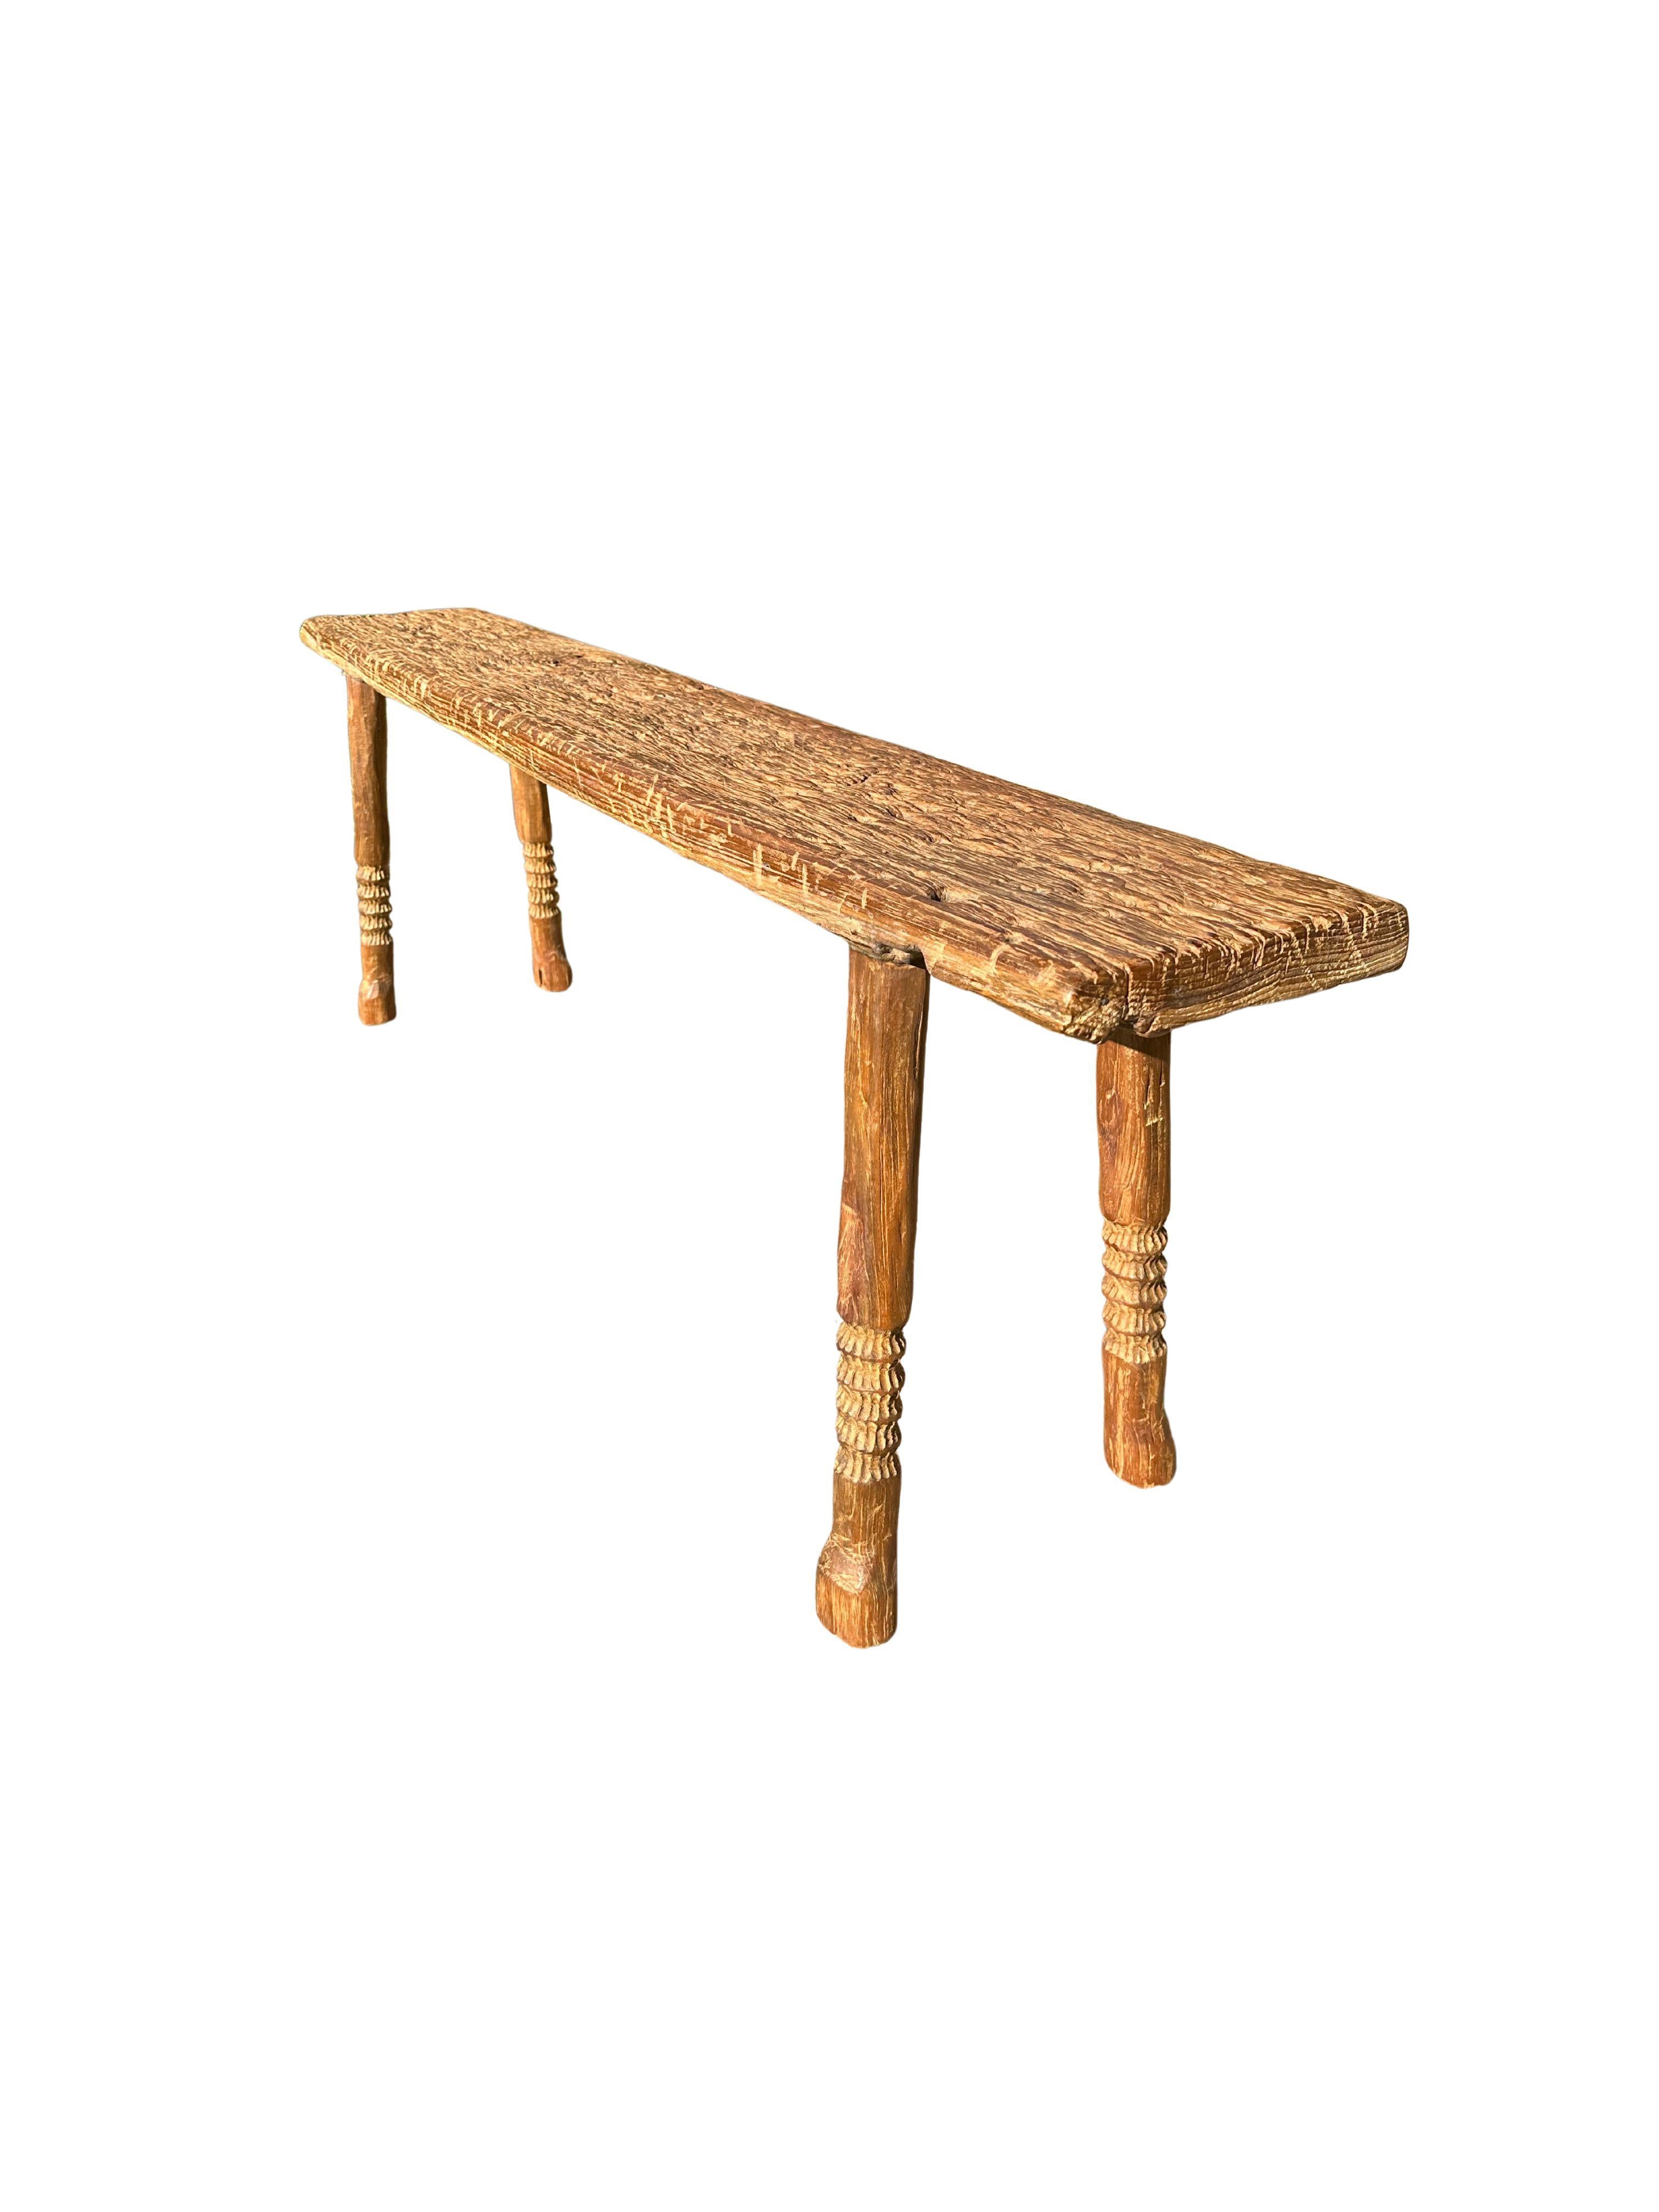 Un banc en teck merveilleusement sculptural avec des détails sculptés sur l'assise. Ce banc en bois de teck présente une merveilleuse forme organique avec un mélange de textures et de nuances de bois. Surélevé par quatre pieds élancés en teck, le